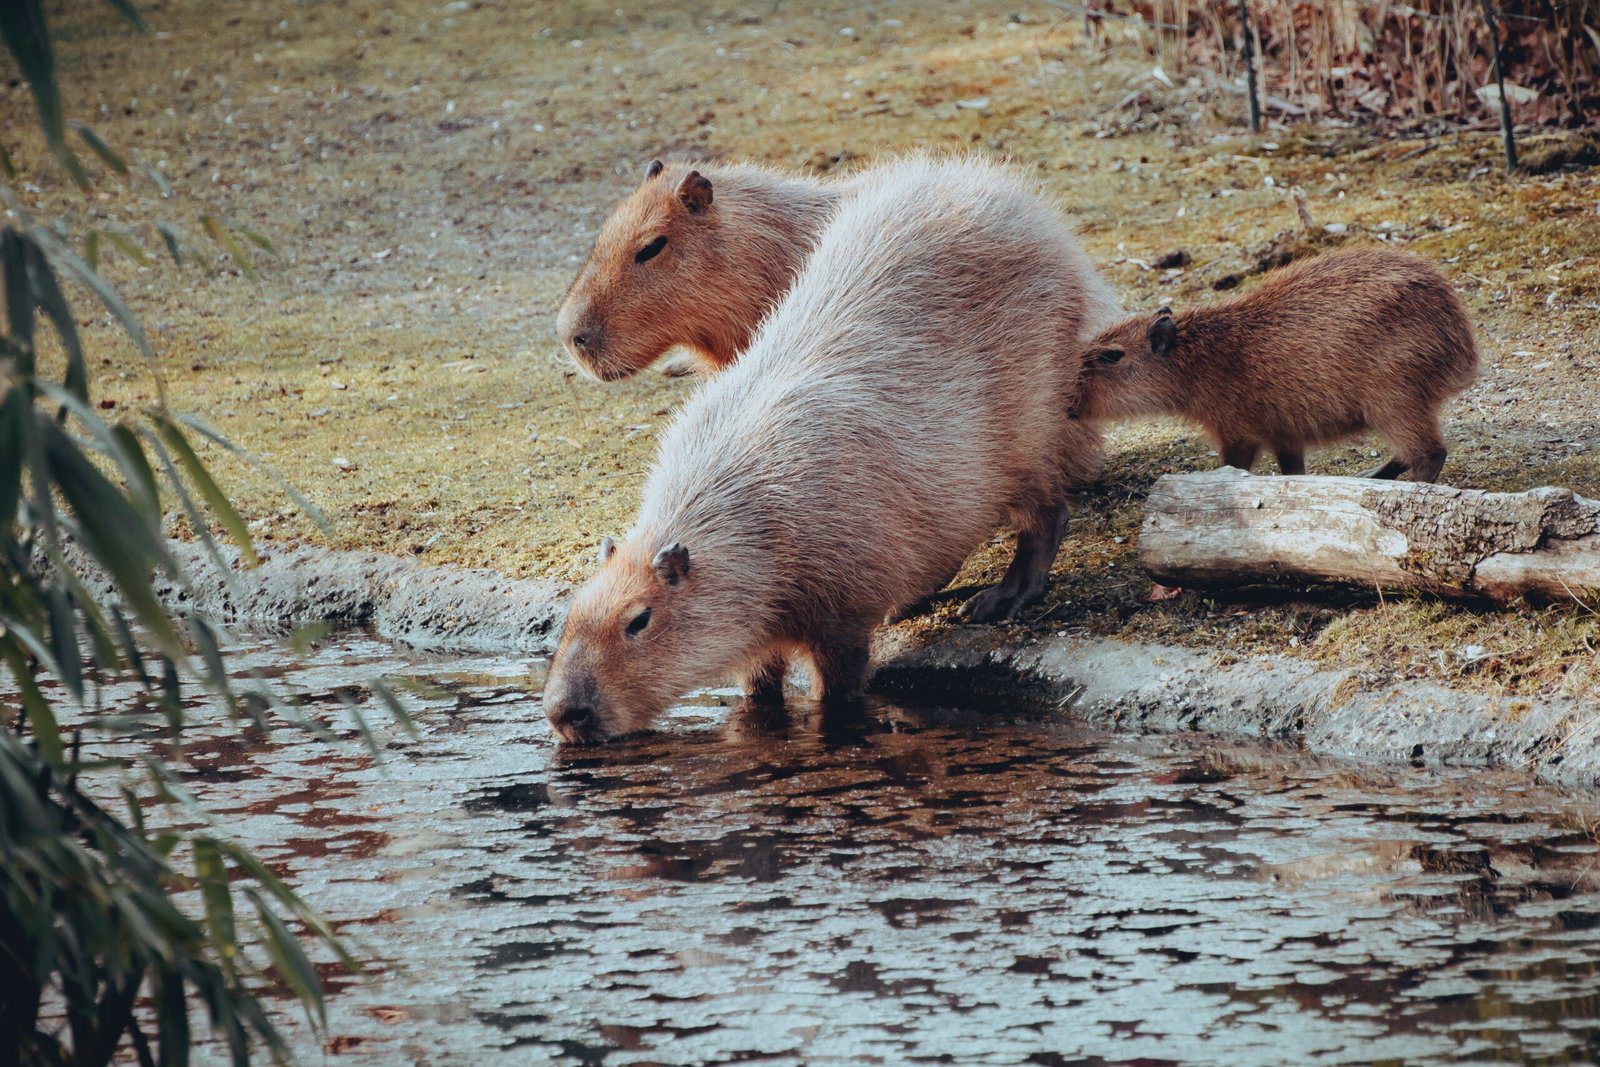 The Lifespan of Capybaras